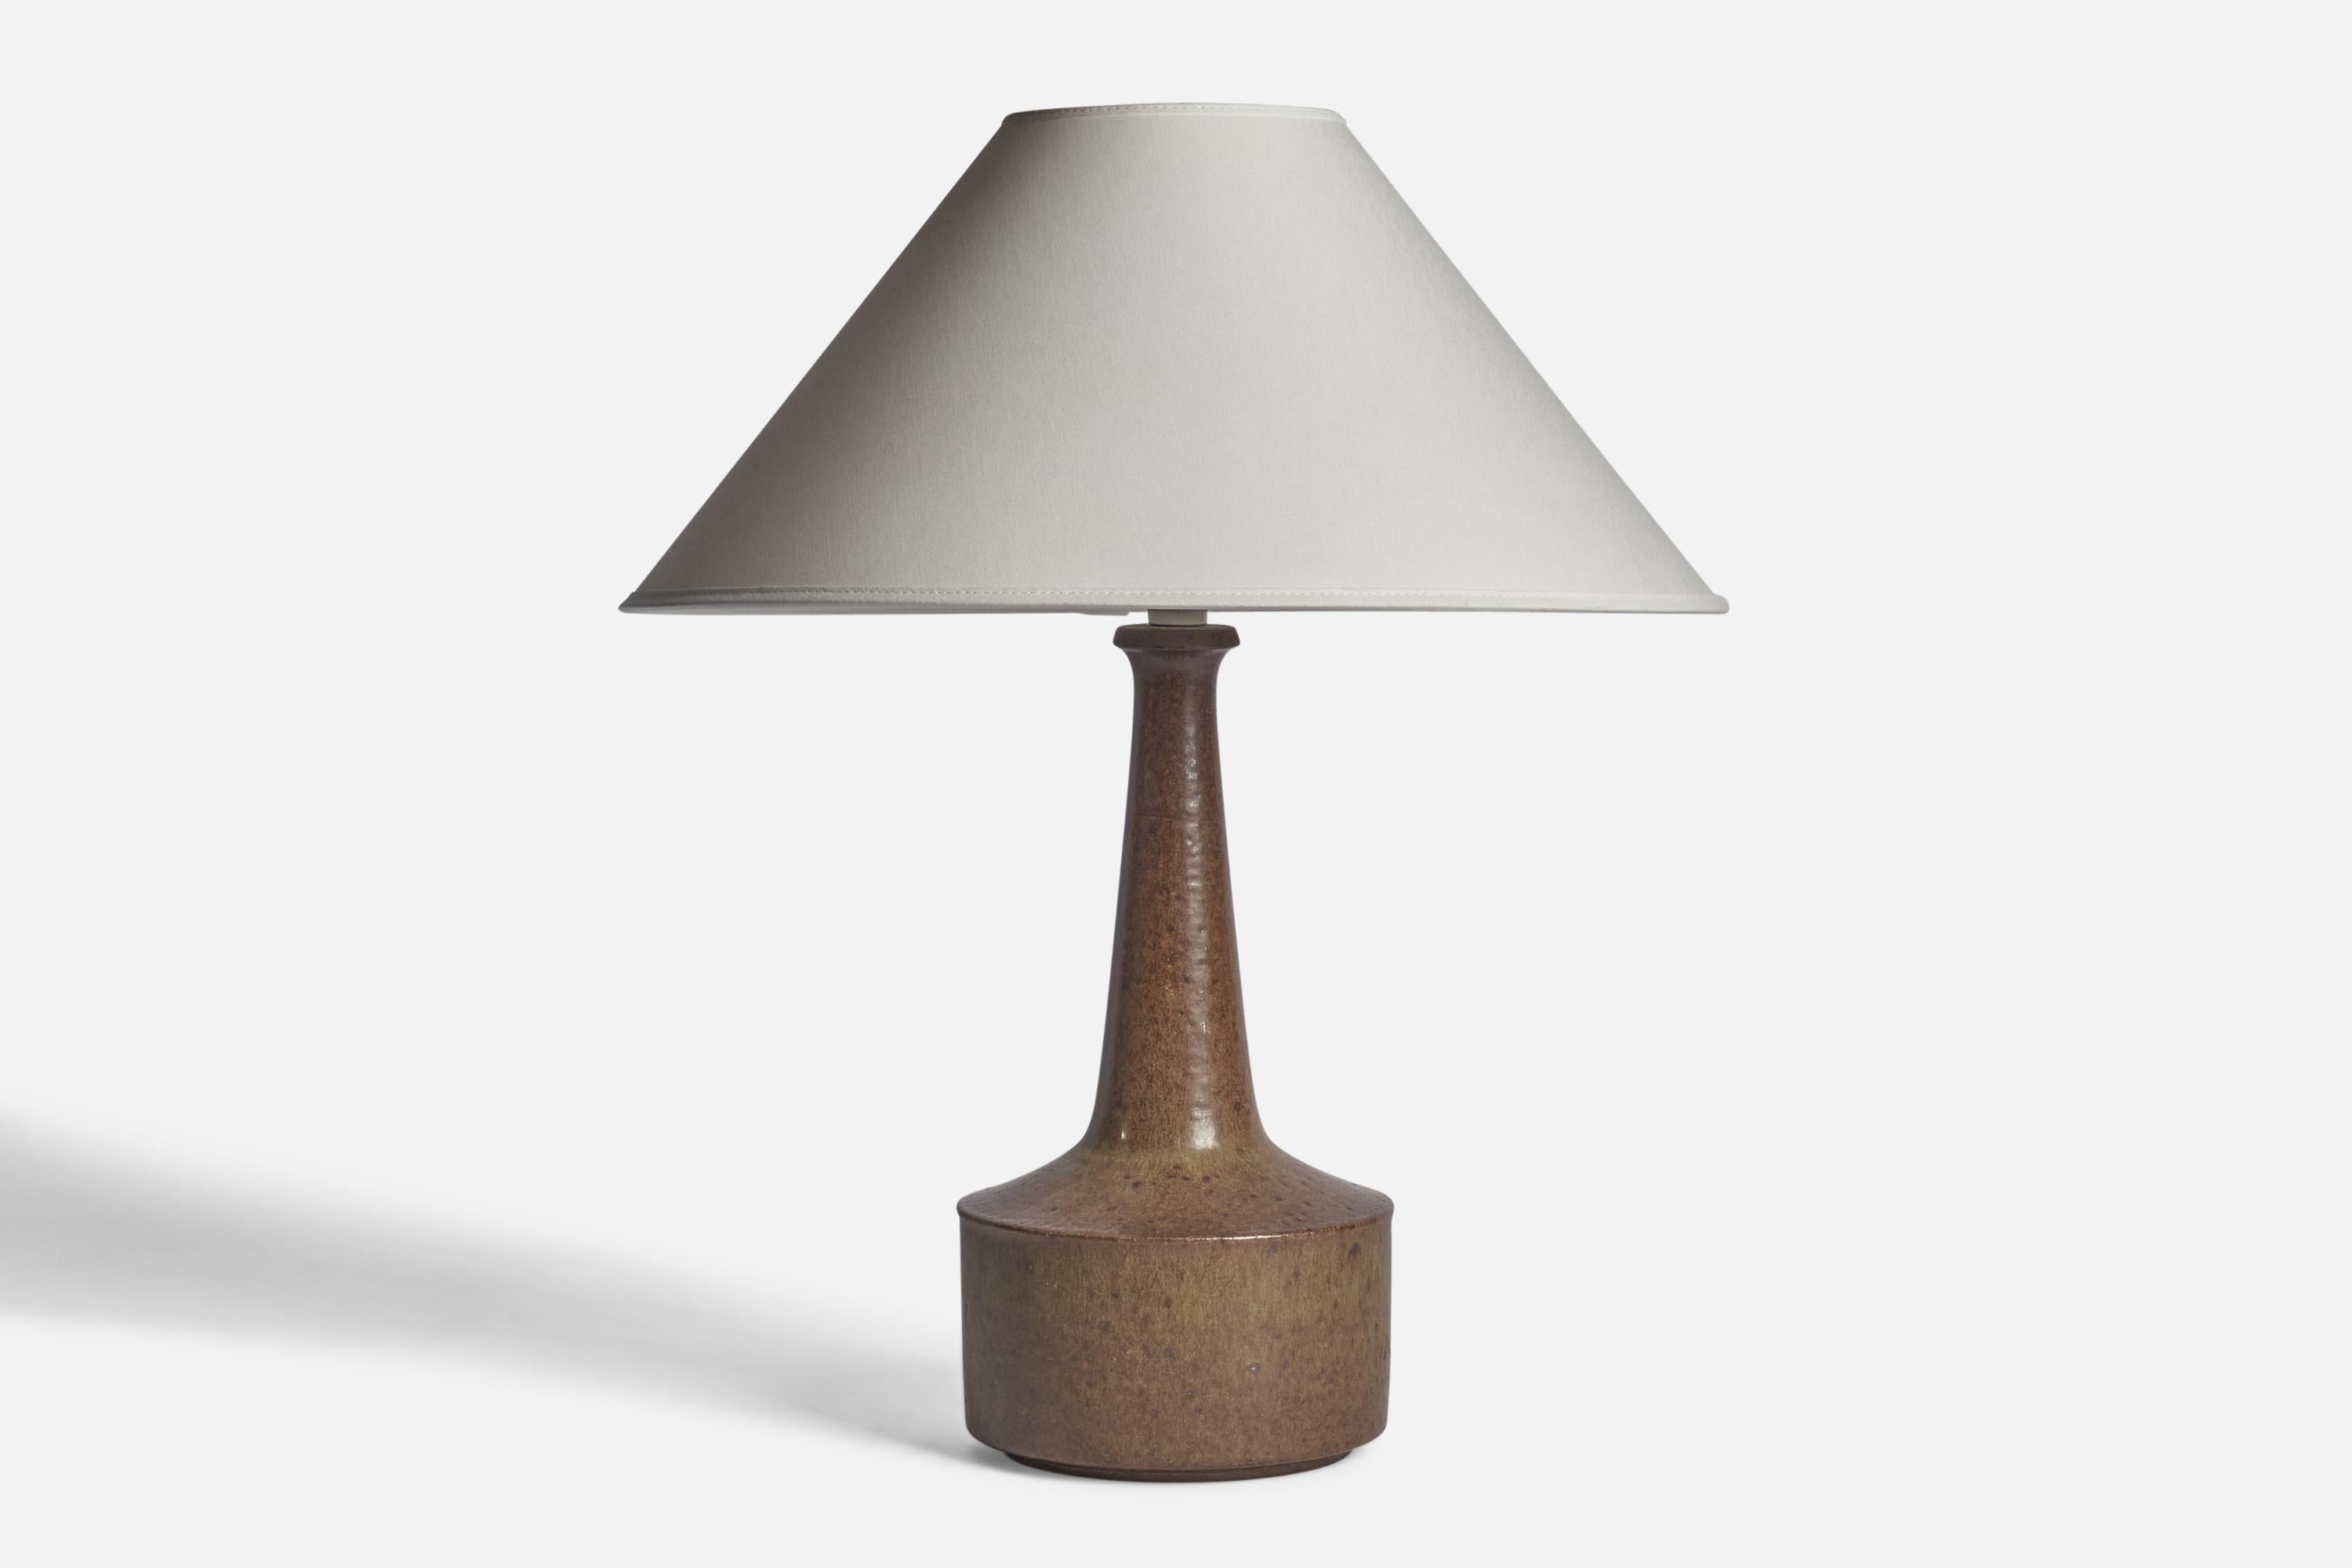 Tischlampe aus braun glasiertem Steingut, entworfen von Per & Annelise Linneman-Schmidt, hergestellt von Palshus, Dänemark, 1960er Jahre

Abmessungen der Lampe (Zoll): 14,5